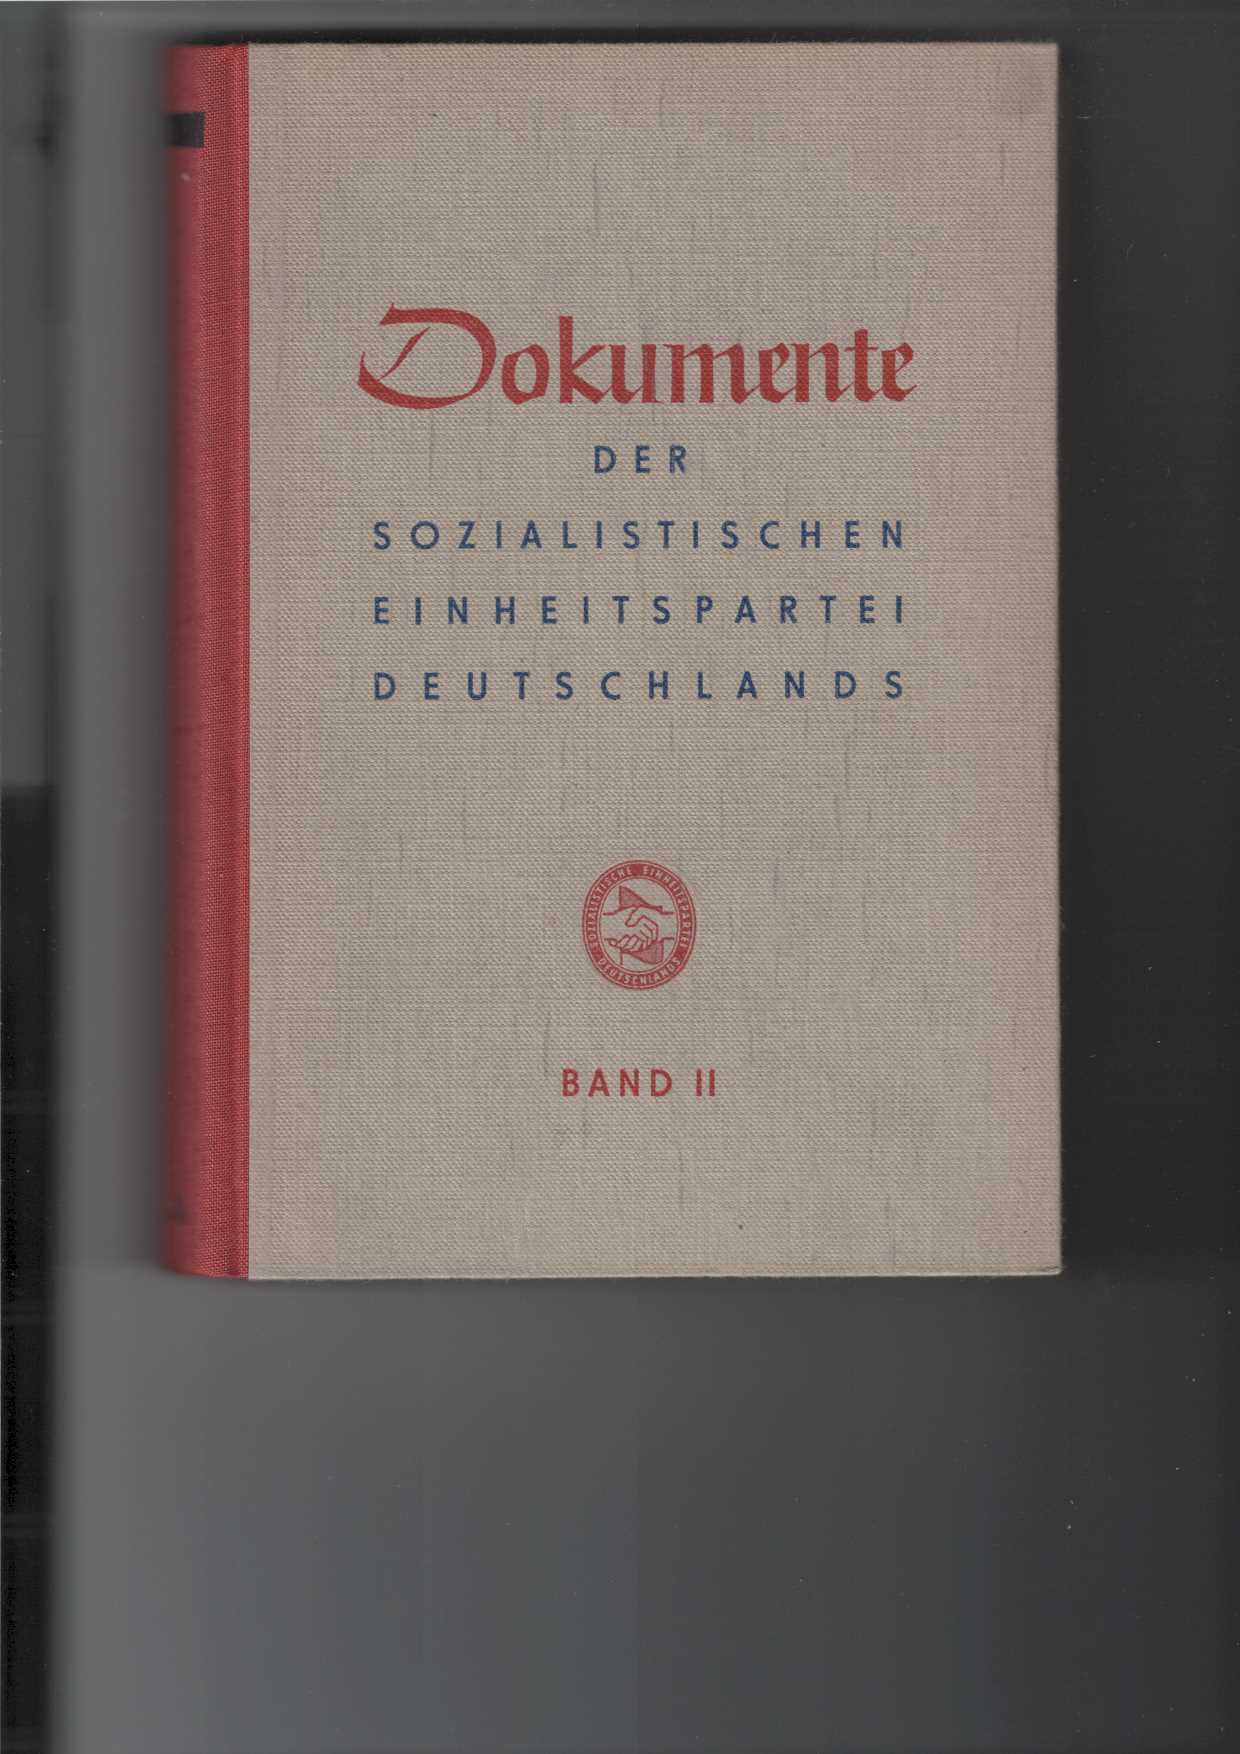   Dokumente der Sozialistischen Einheitspartei Deutschlands (SED), Band II (2) : April 1948 bis Mai 1950. 